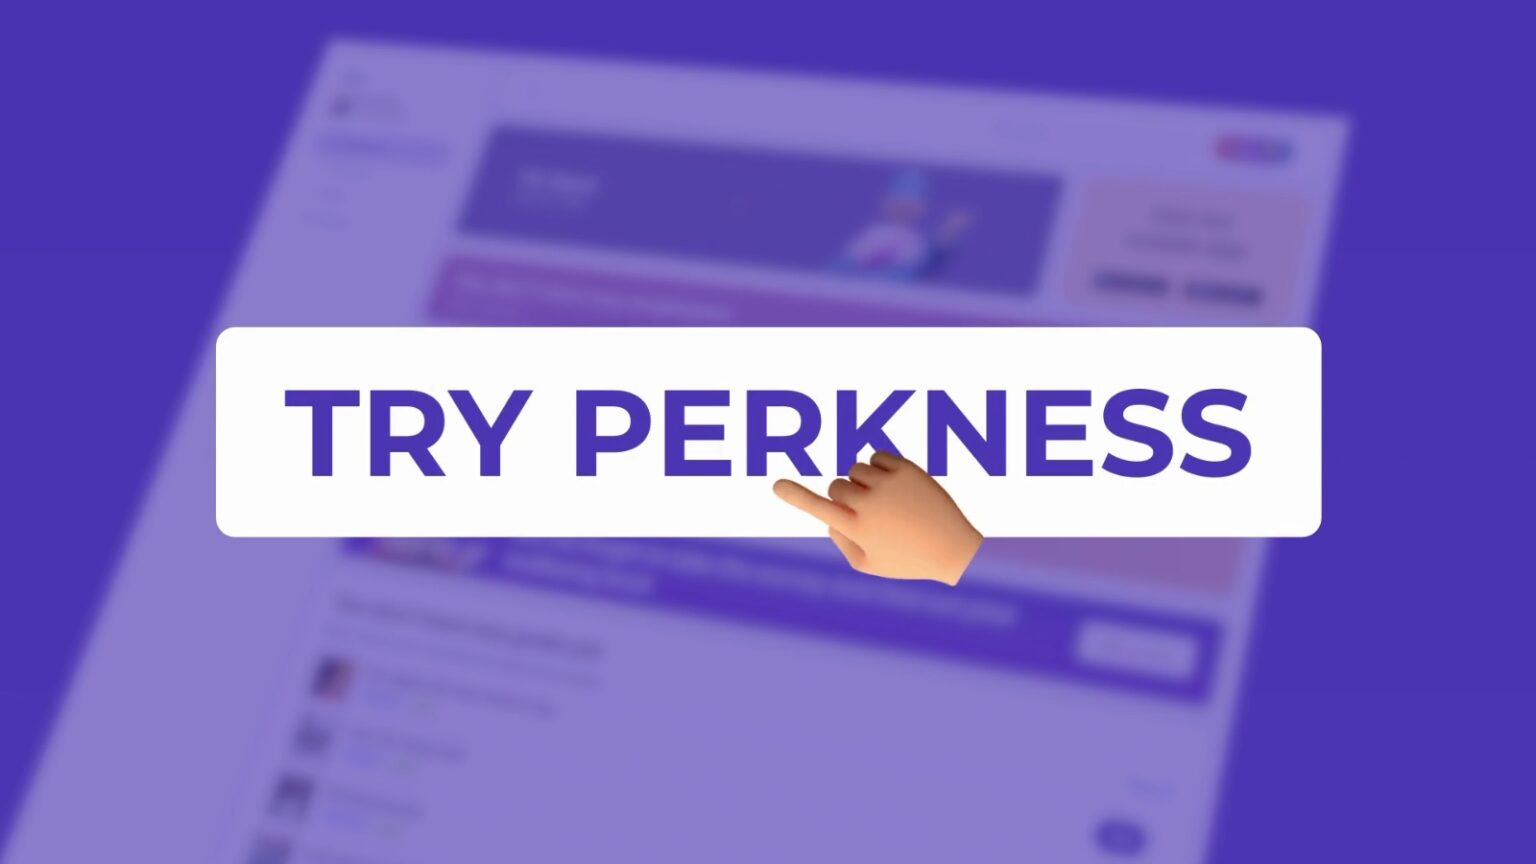 Perkness 1